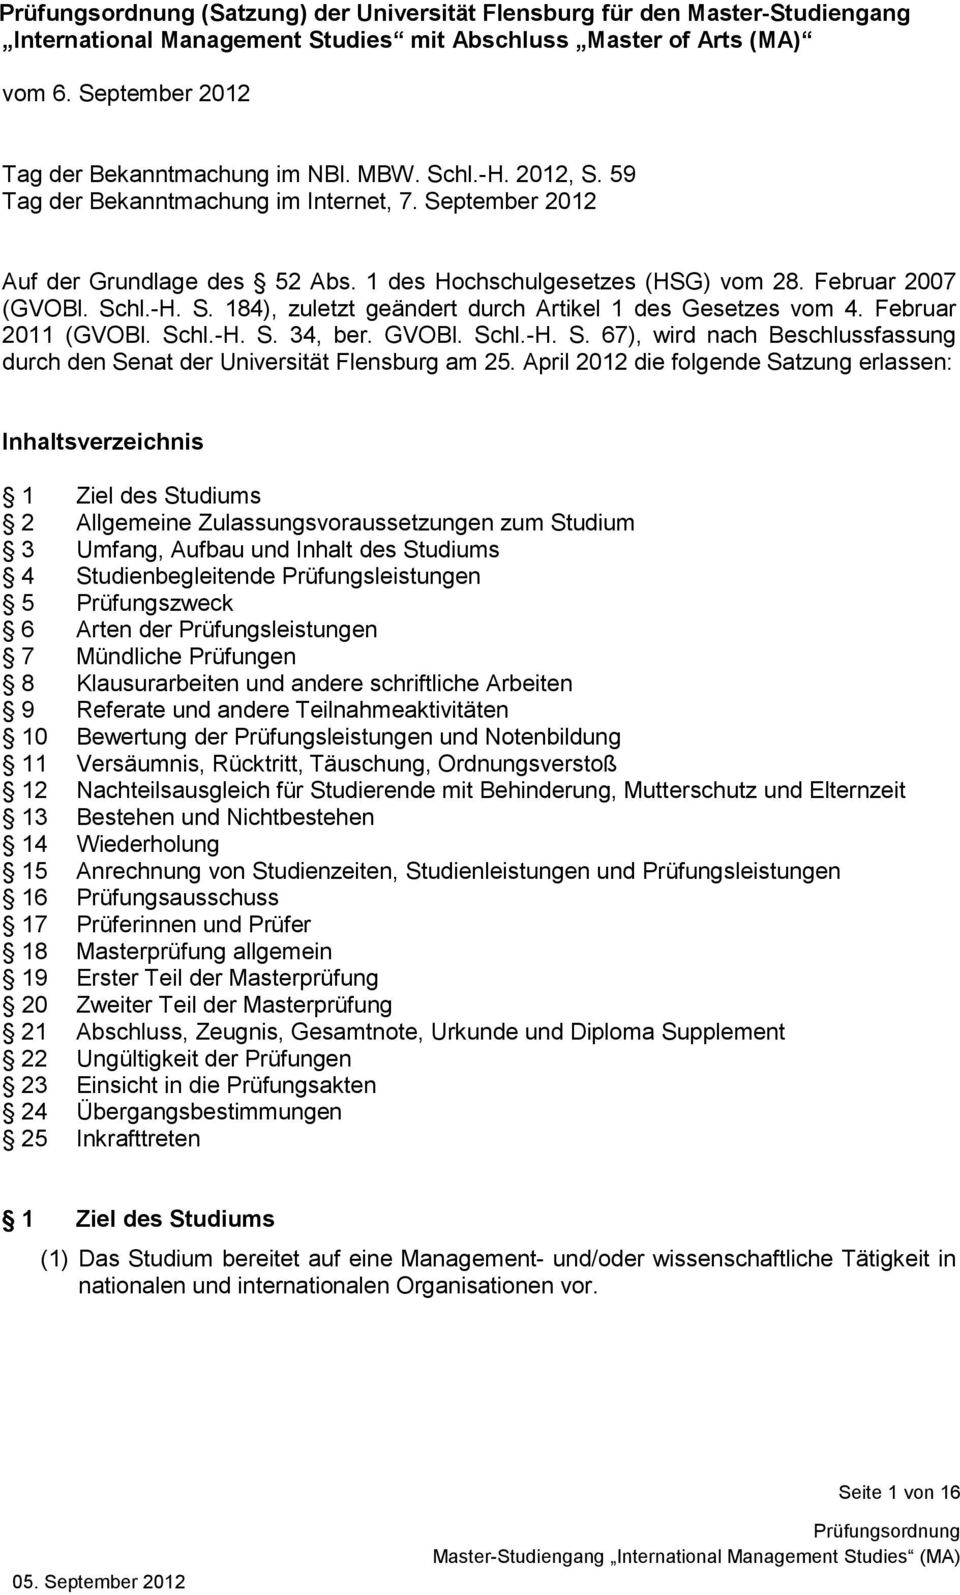 Februar 2011 (GVOBl. Schl.-H. S. 34, ber. GVOBl. Schl.-H. S. 67), wird nach Beschlussfassung durch den Senat der Universität Flensburg am 25.